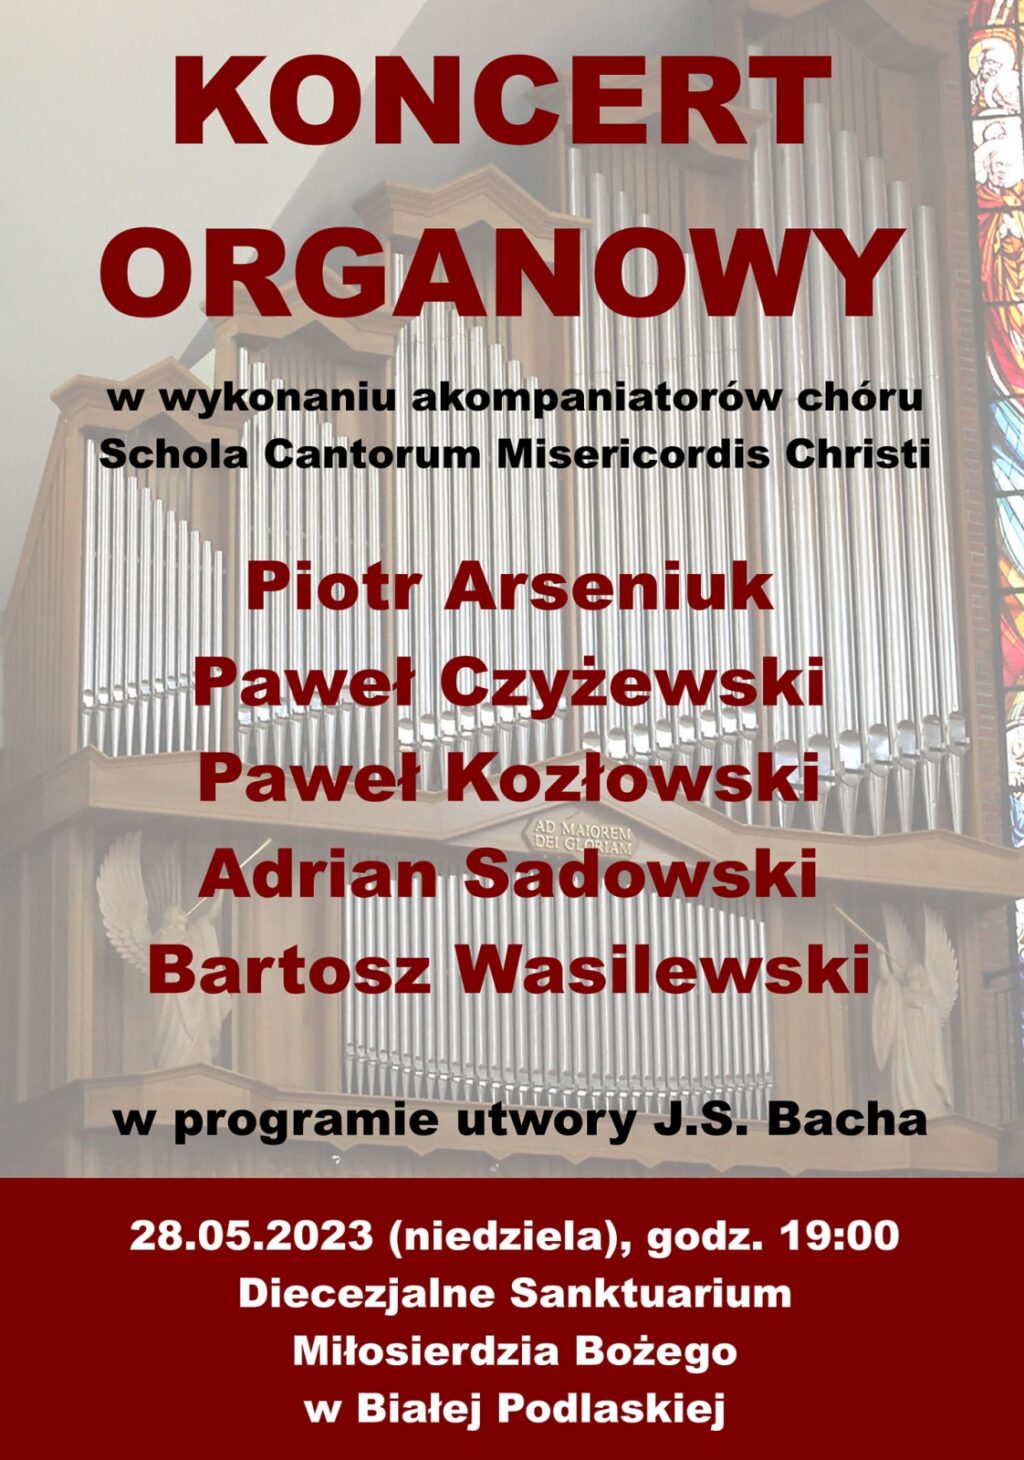 Koncert organowy w Białej Podlaskiej